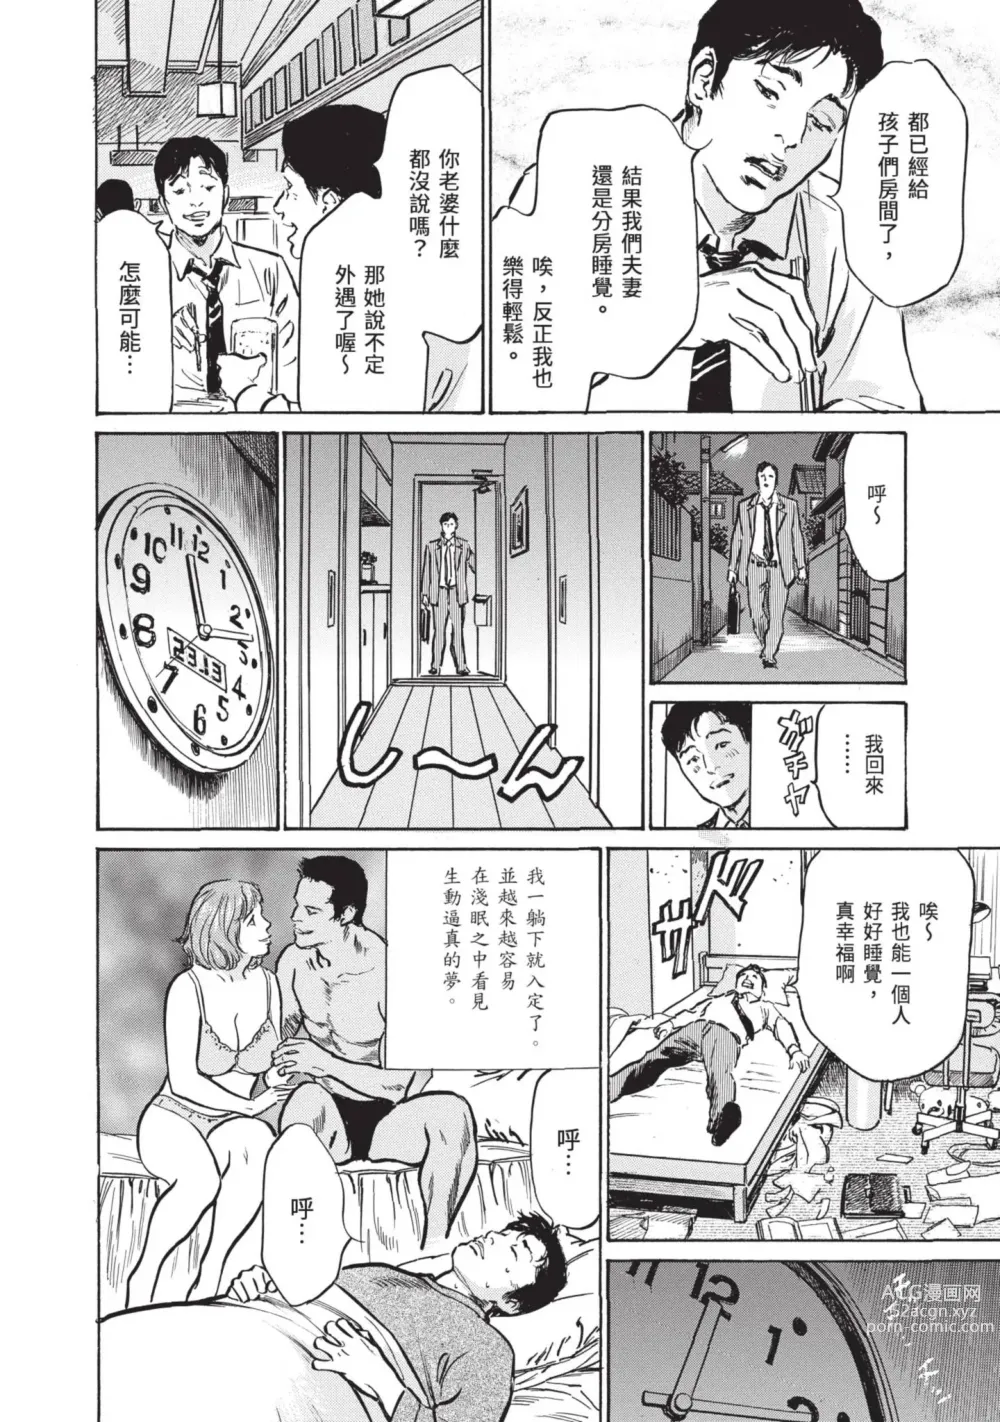 Page 184 of manga Zutto Himitsu ni Shiteita Ano Koto Zenbu Oshiemasu